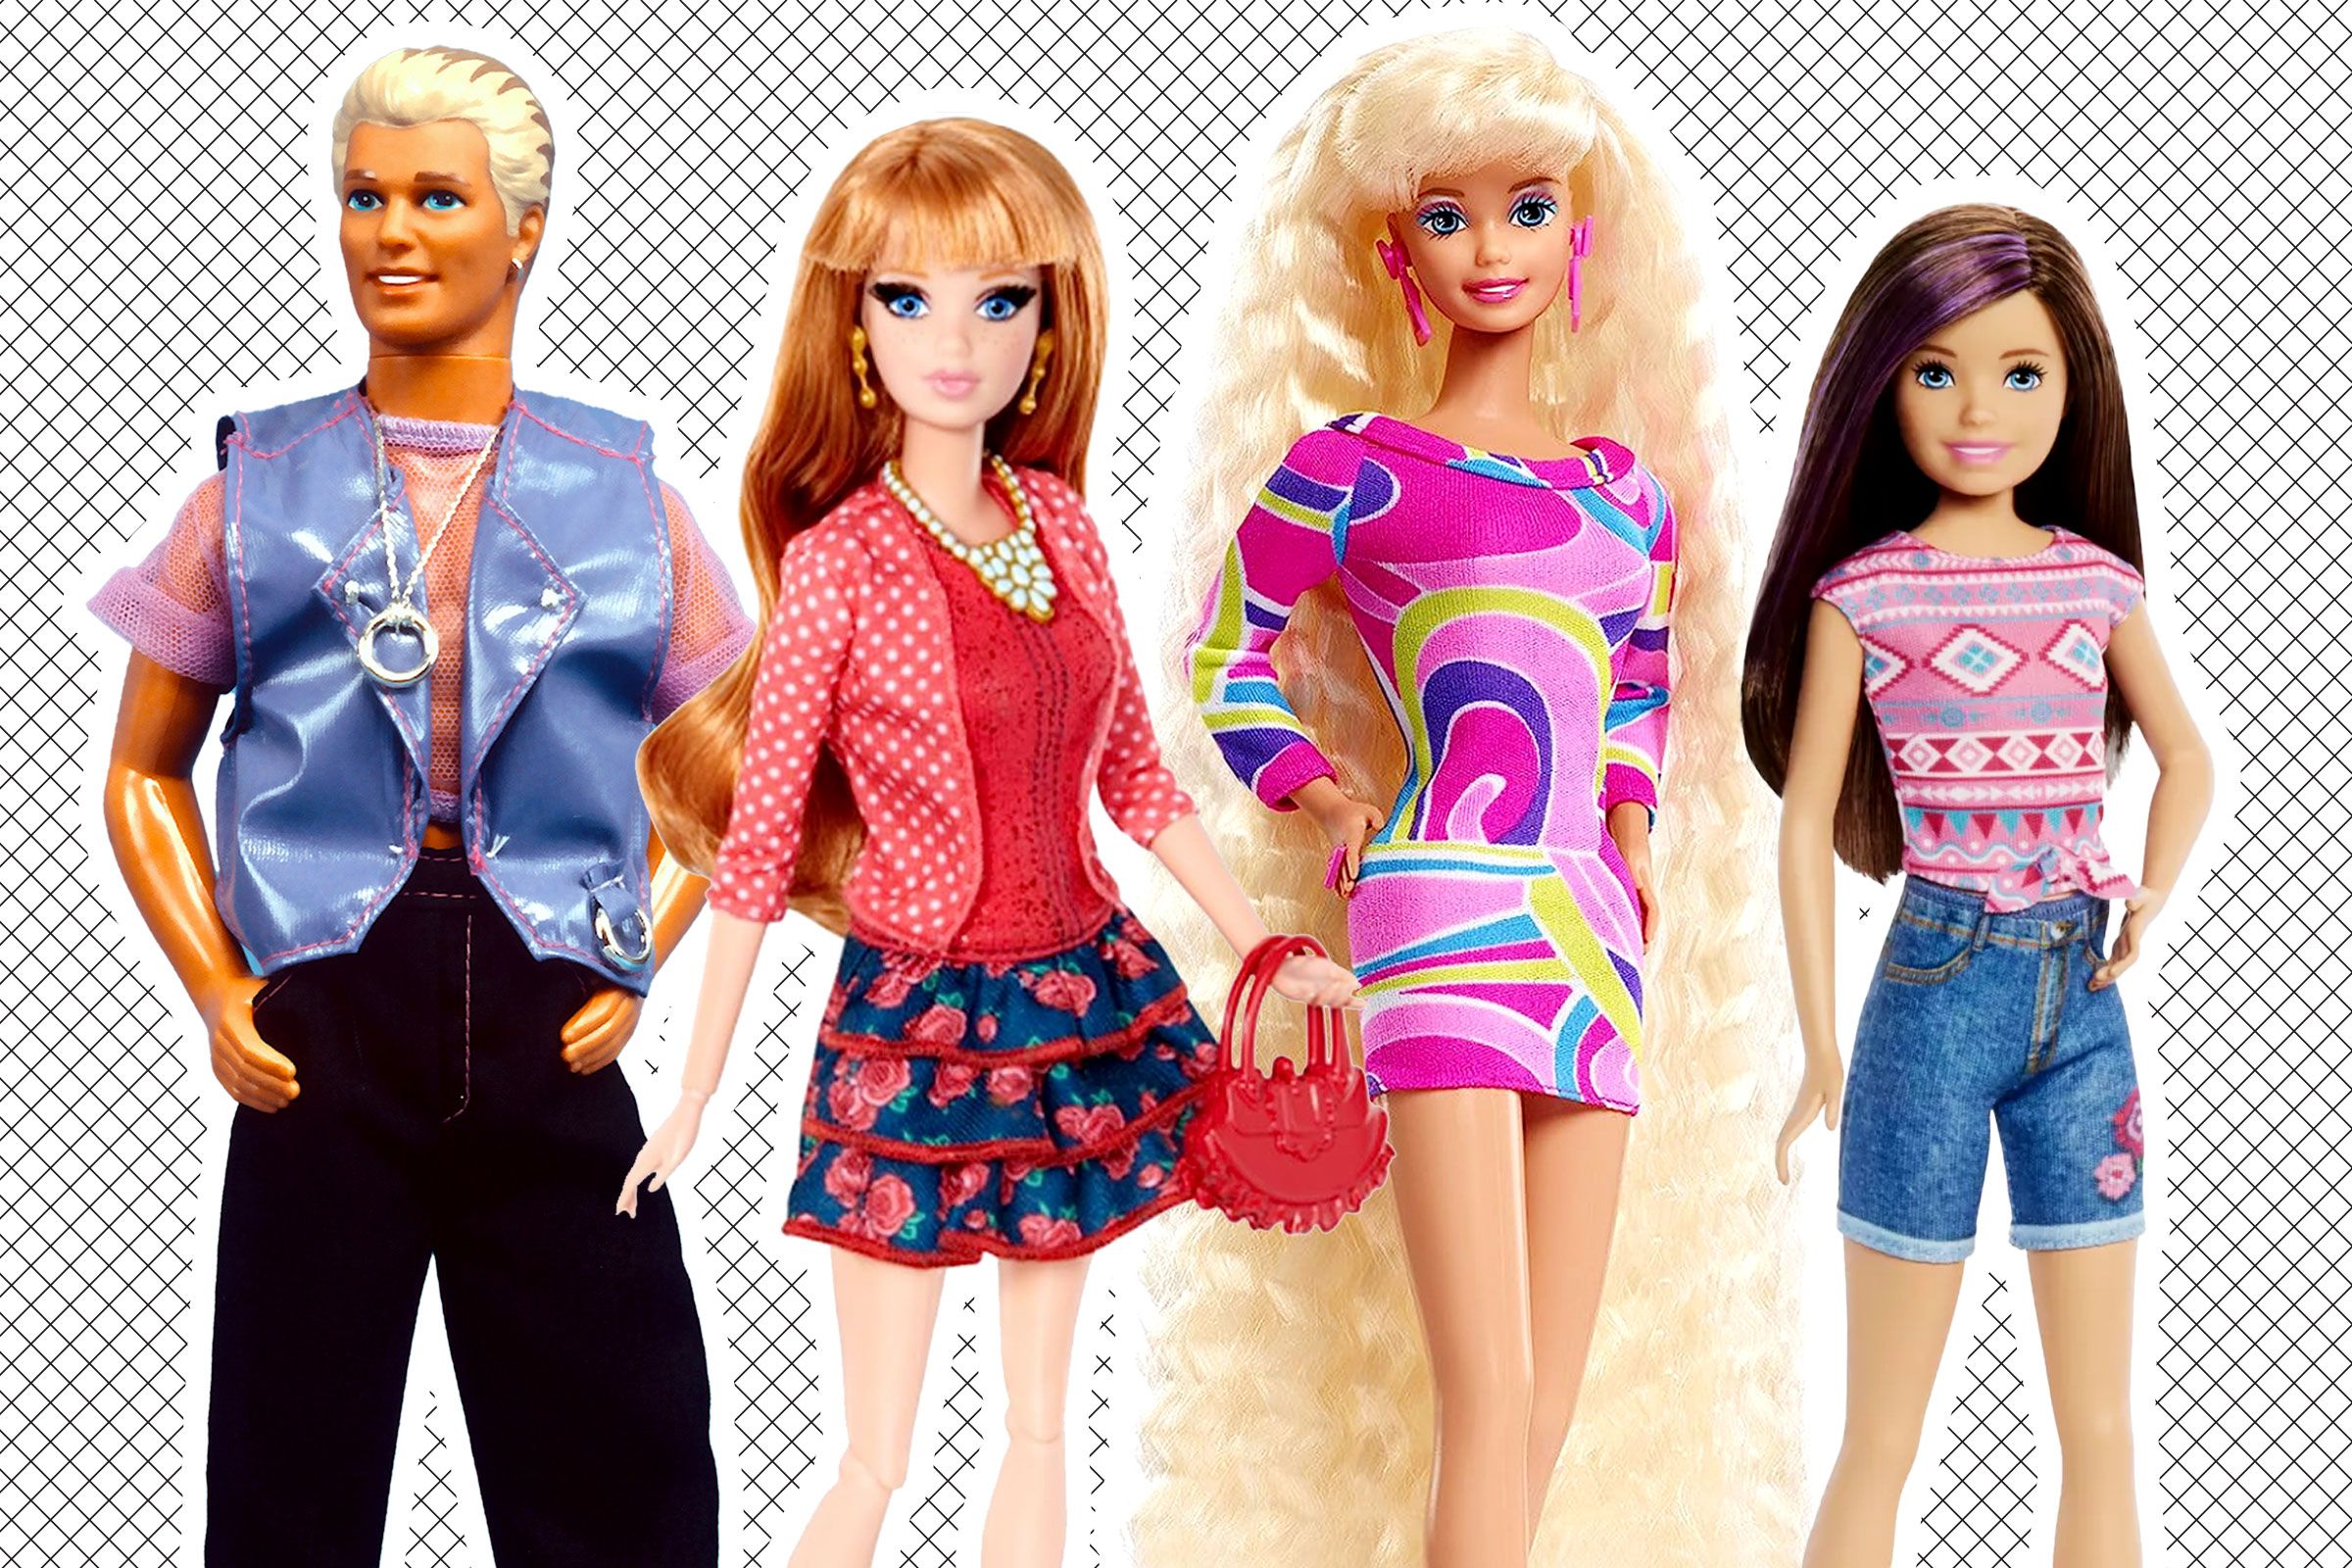 Who Is Ken's Best Friend, Allan? All About Michael Cera's 'Barbie